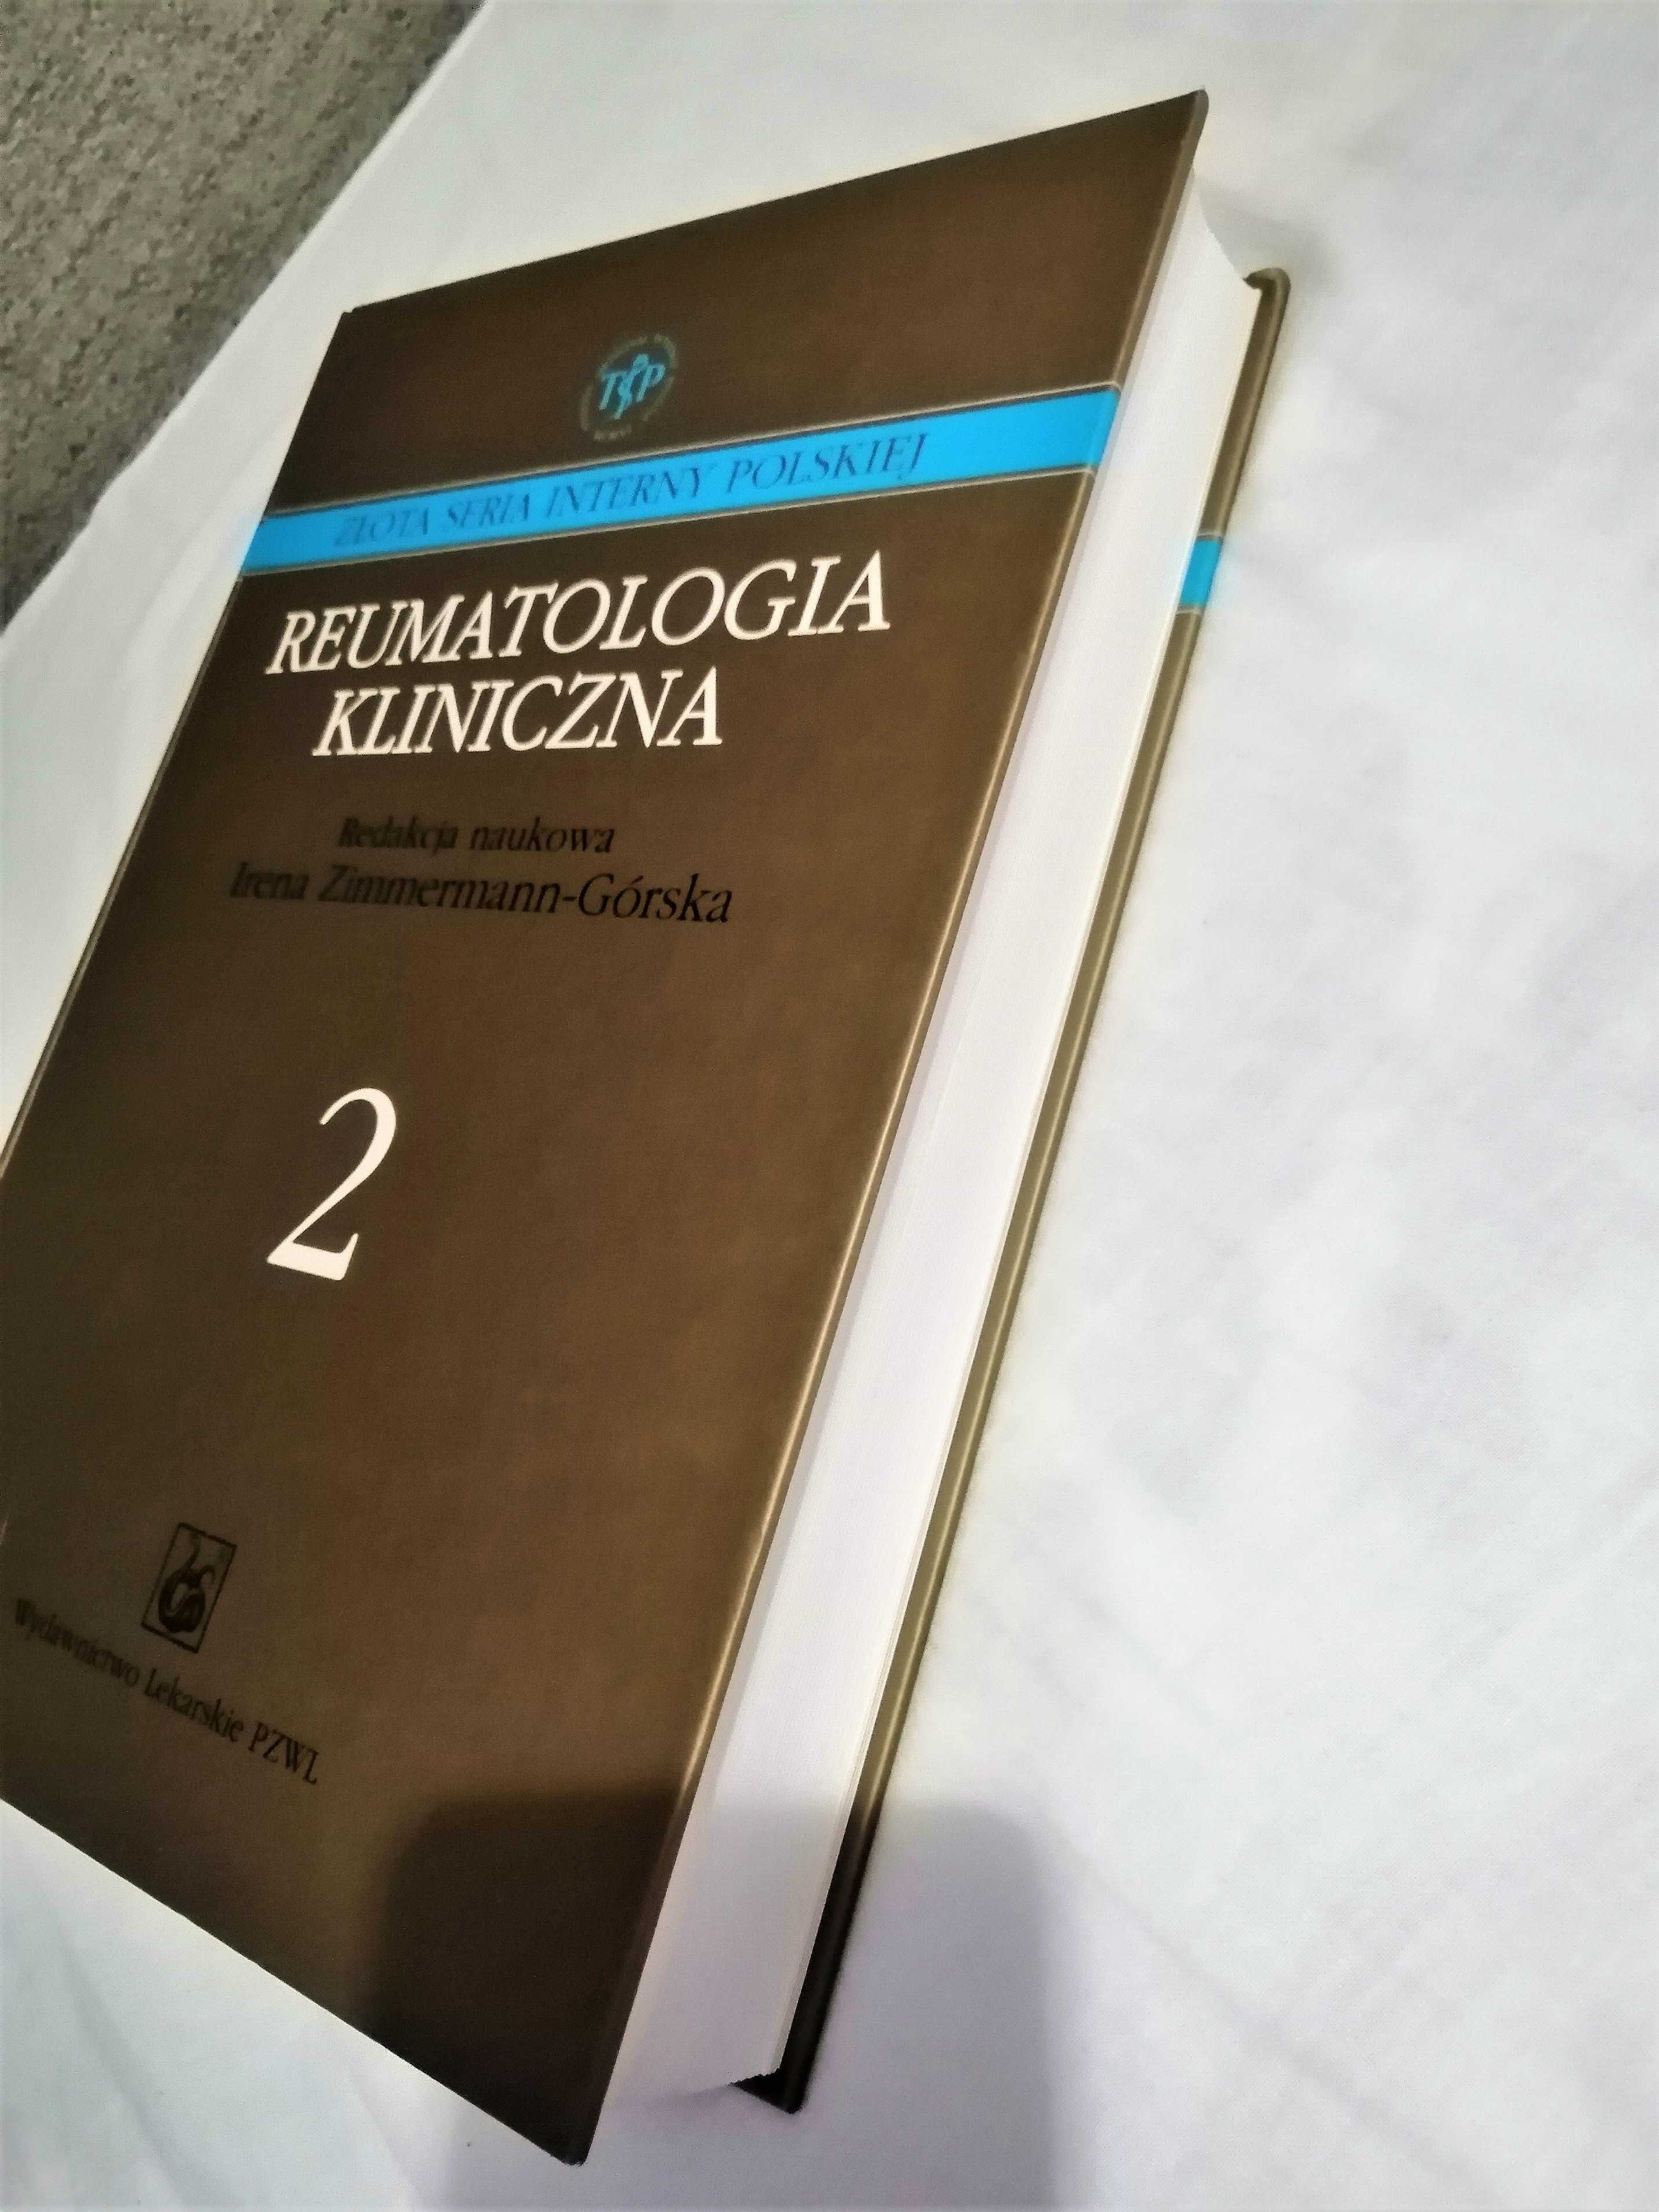 Reumatologia kliniczna tom I i II Irena Zimmermann-Górska